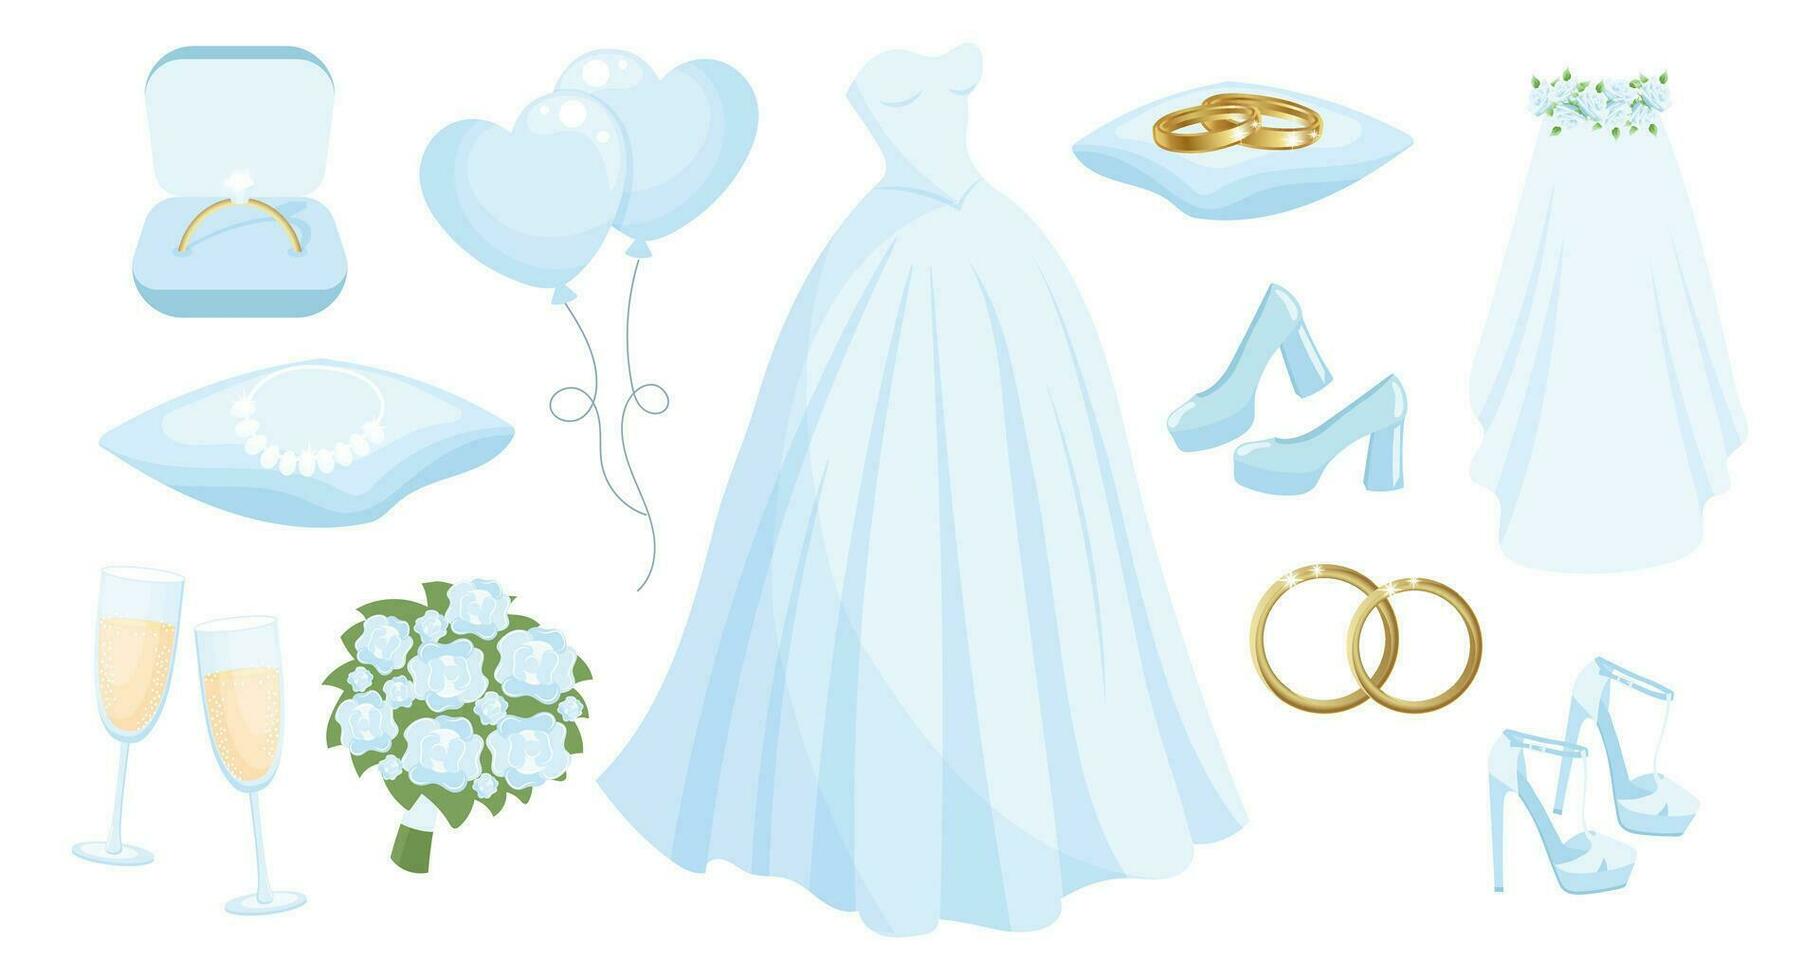 bruiloft reeks van kleren en accessoires voor de bruid, bruiloft jurk, ringen, ketting, schoenen, sluier, Champagne bril, boeket, ballonnen. ontwerp elementen, vector